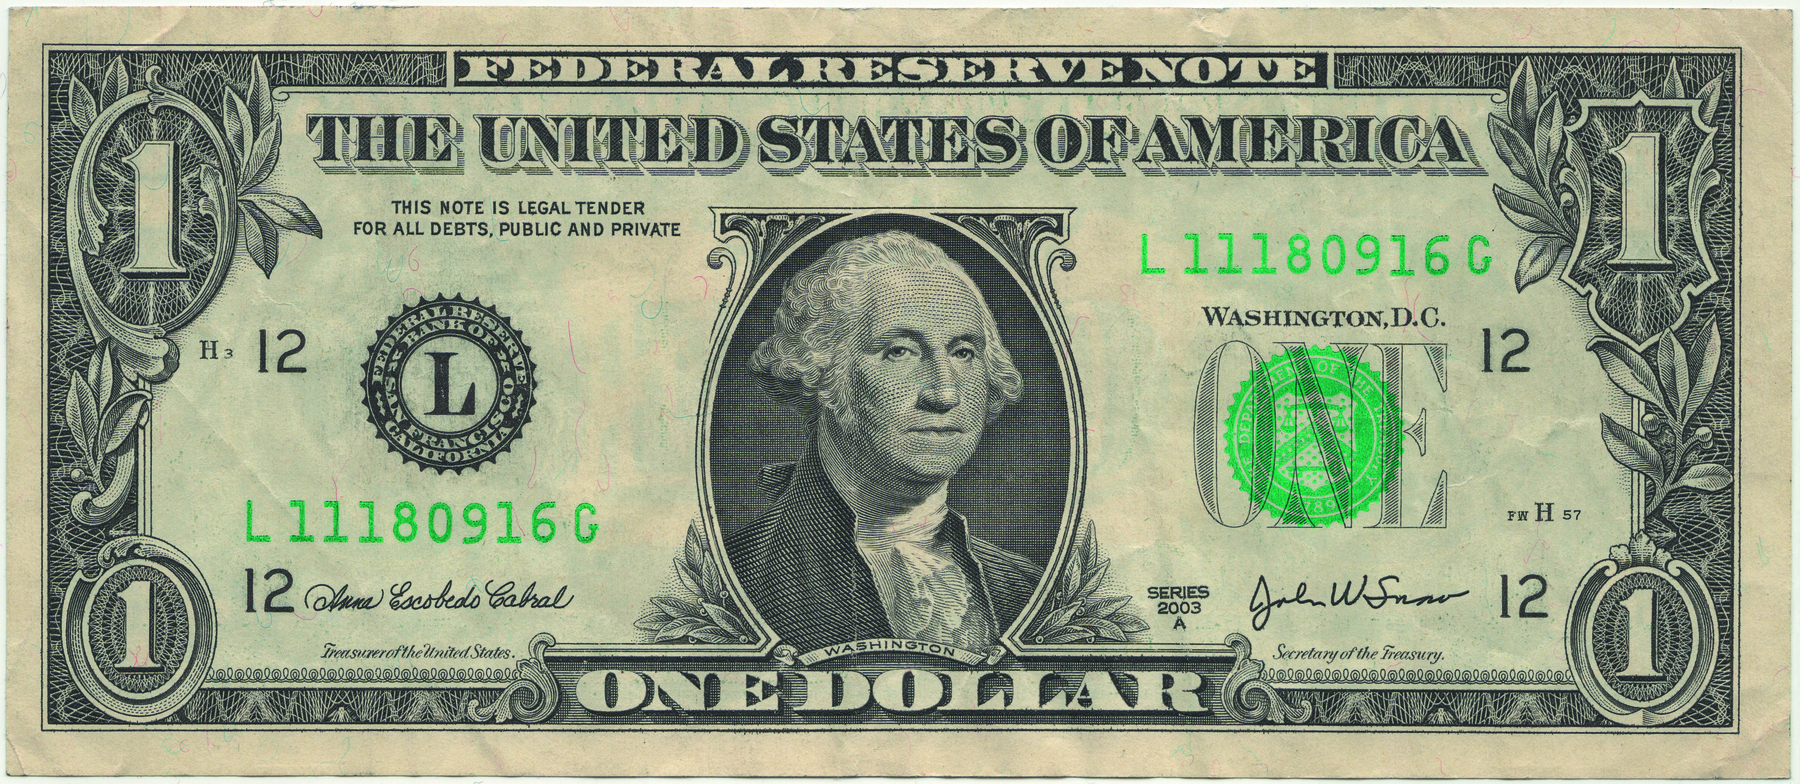 Foto. Nota de um dólar dos Estados Unidos. No centro, imagem de um homem com estilo de penteado e roupas do século XIX. Acima, as informações "Federal Reserve Note" e o número 1 nos quatro cantos da nota.